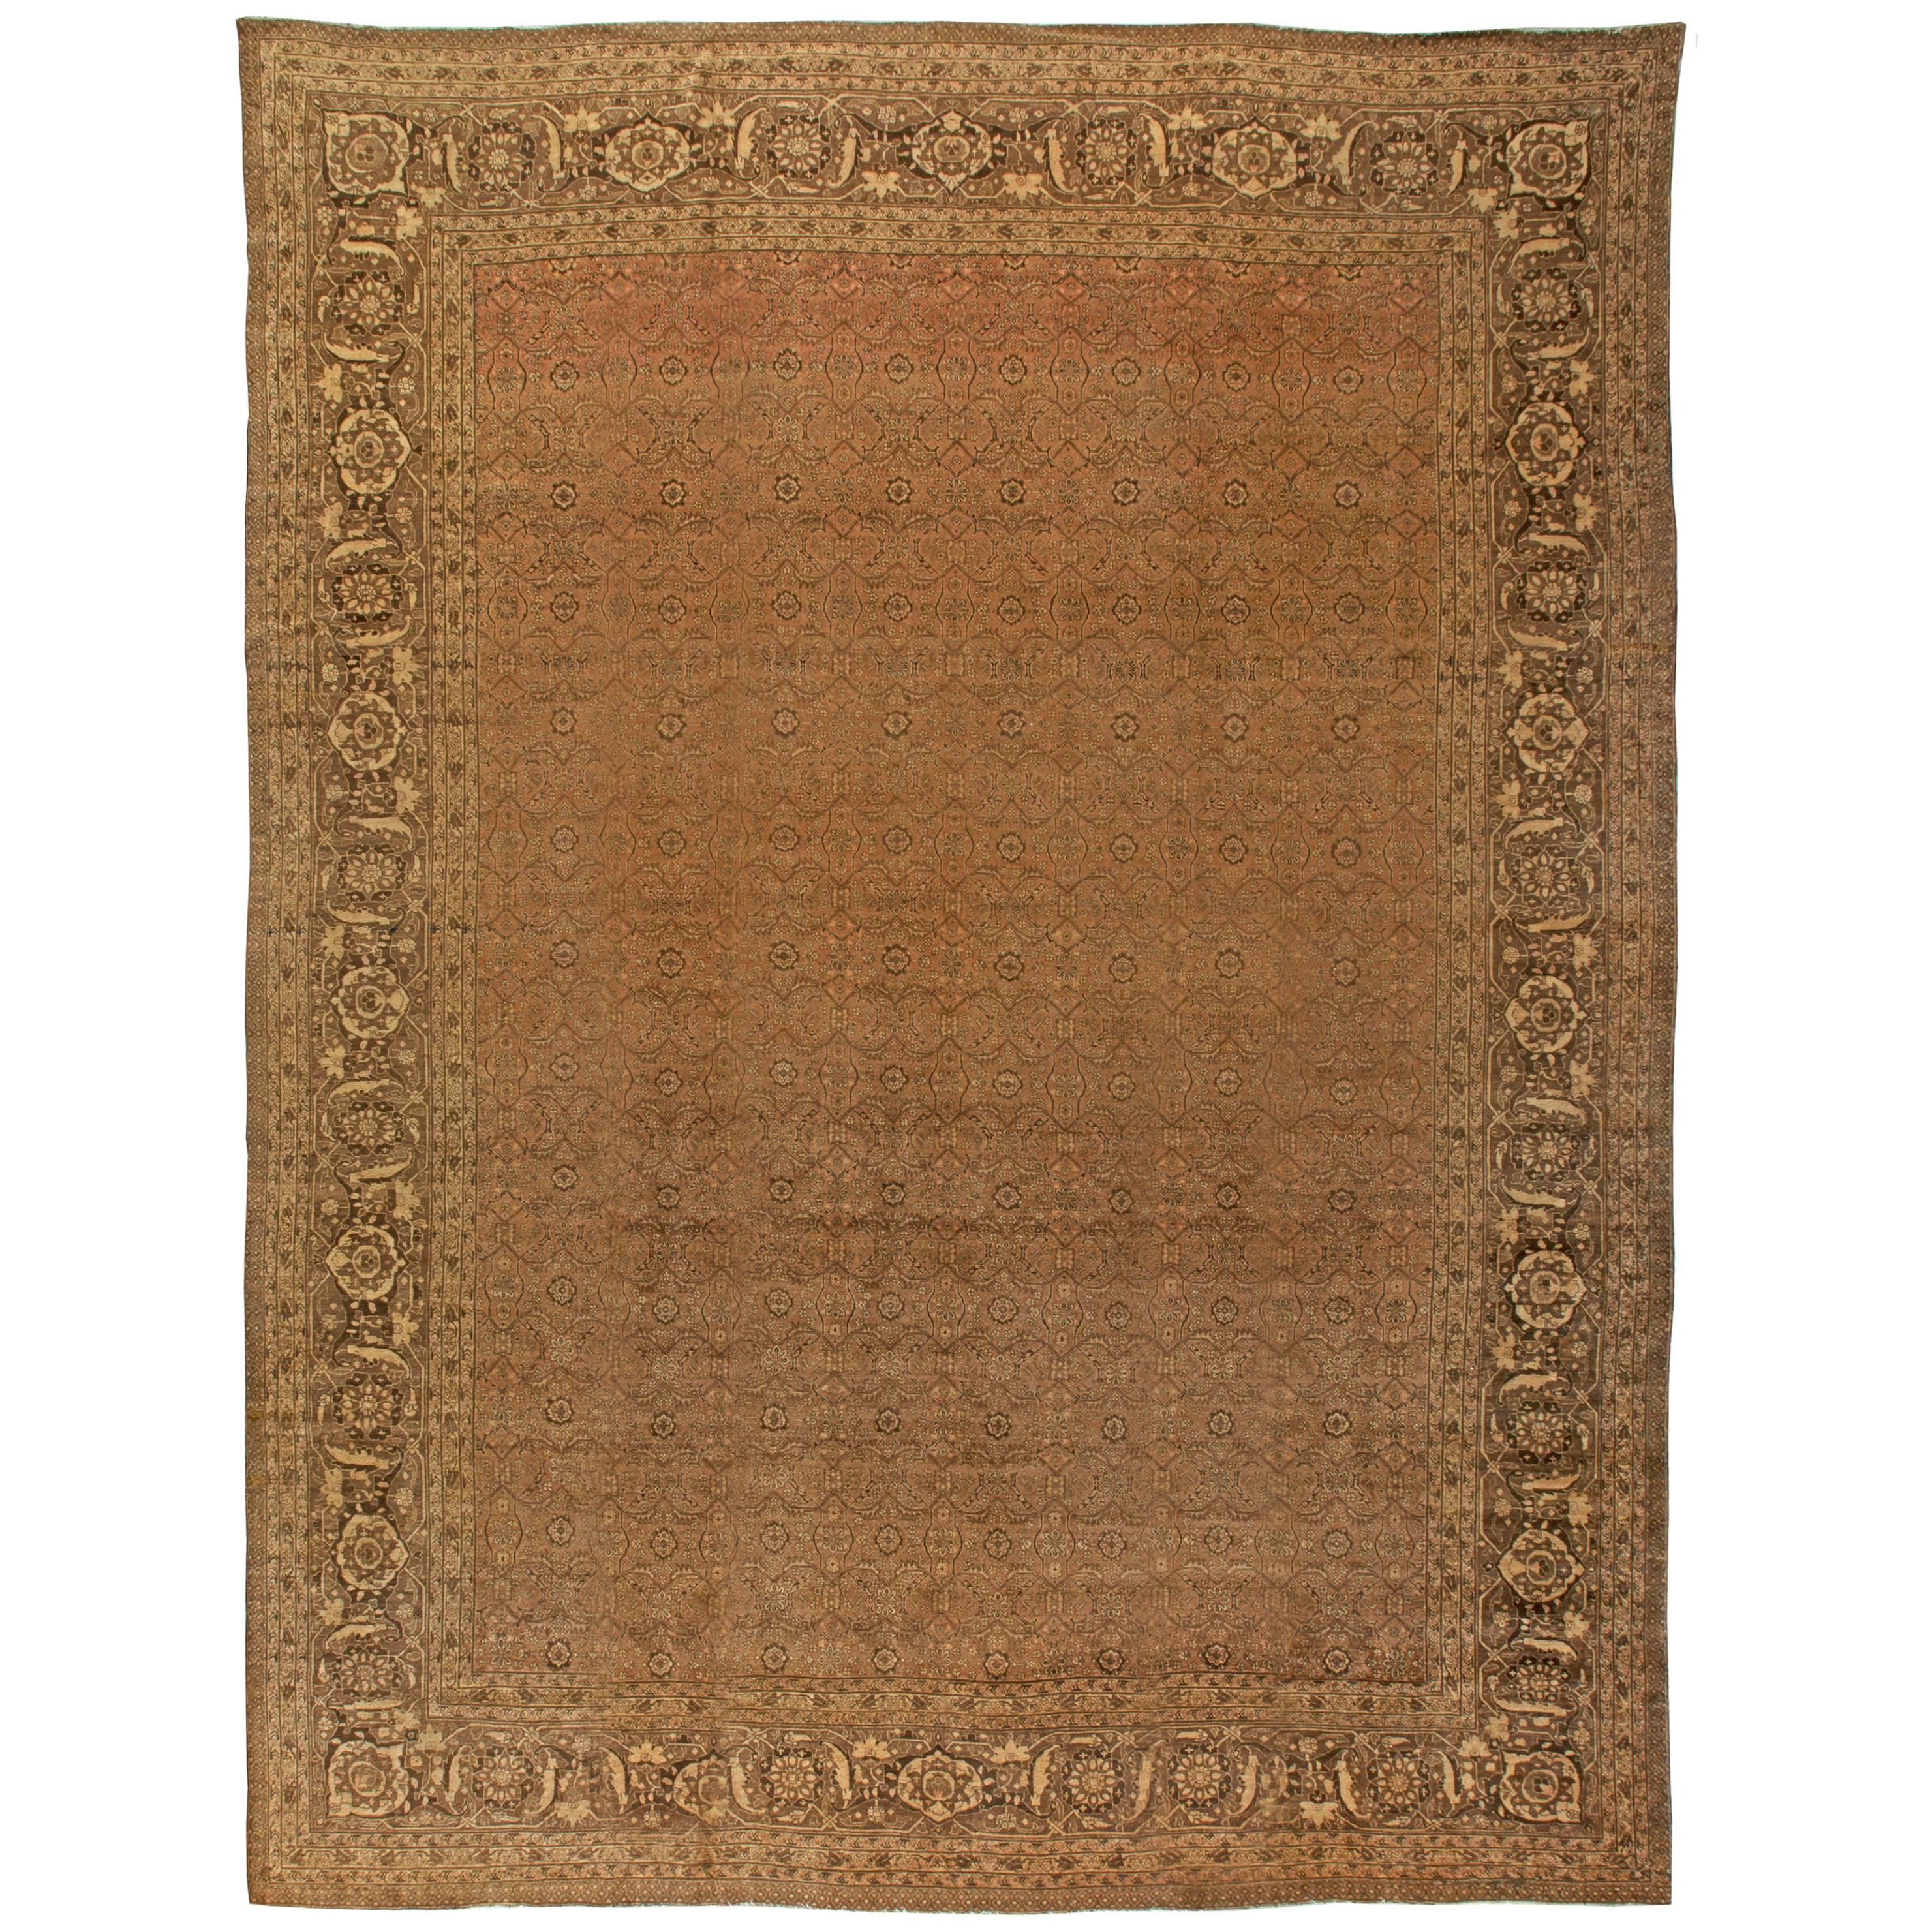 Großer antiker persischer Täbris Teppich aus handgefertigter Wolle